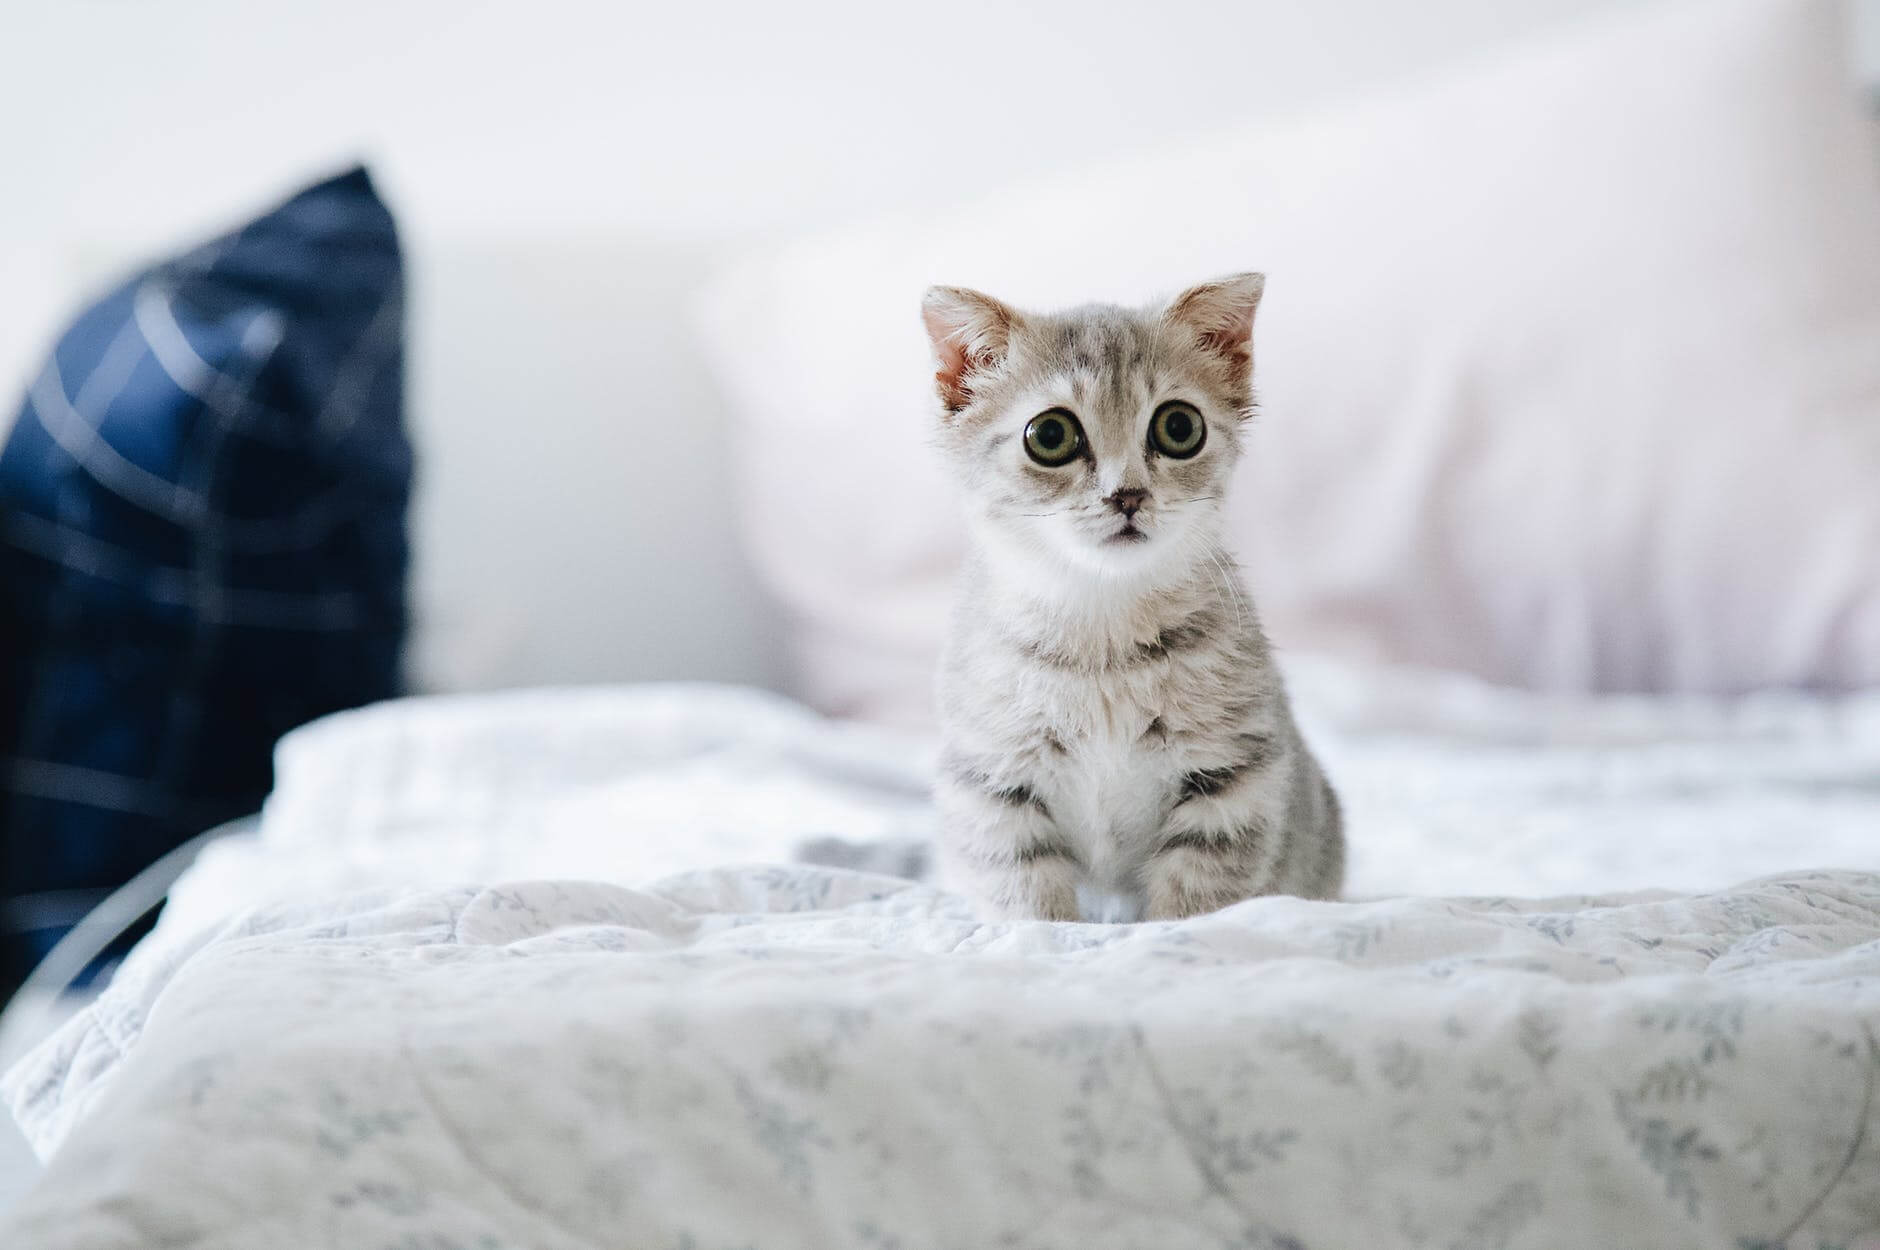 Cute kitten with lovely eyes